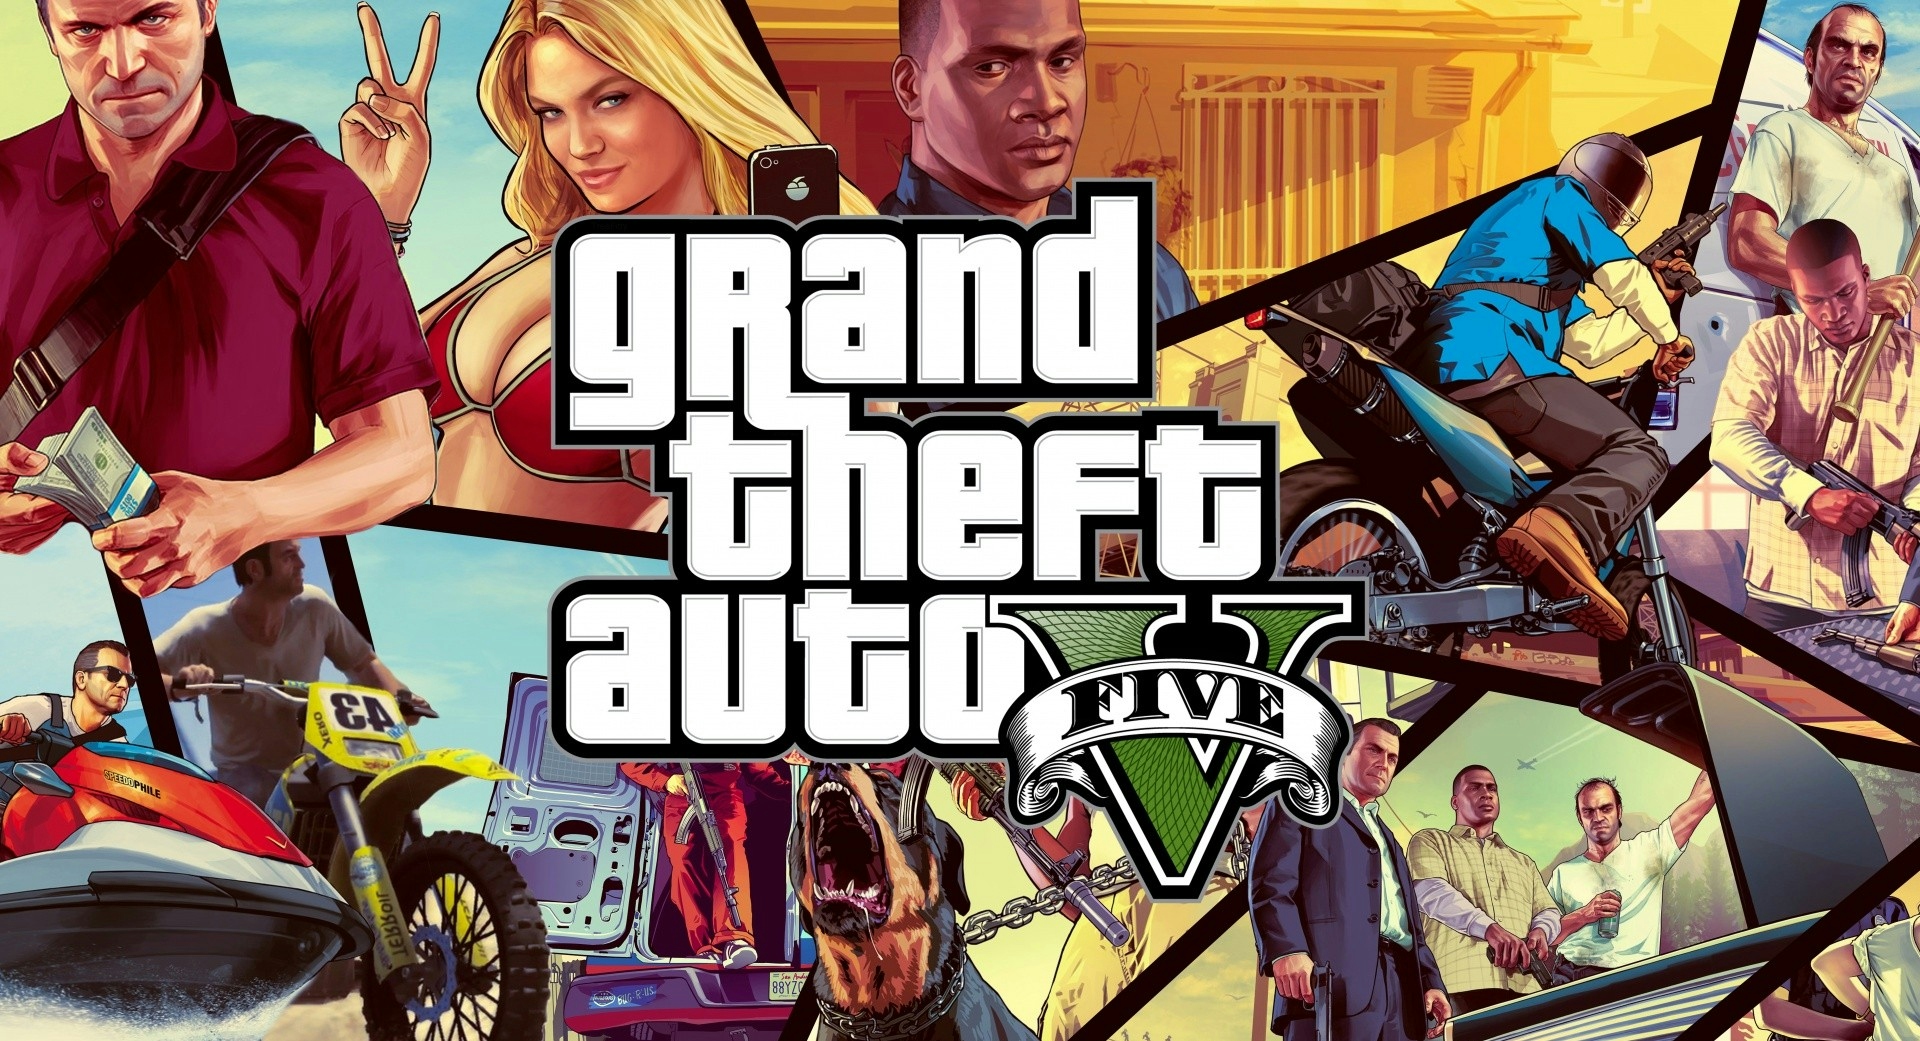 Mod de Xbox 360 permite jogar GTA V na primeira pessoa - Grand